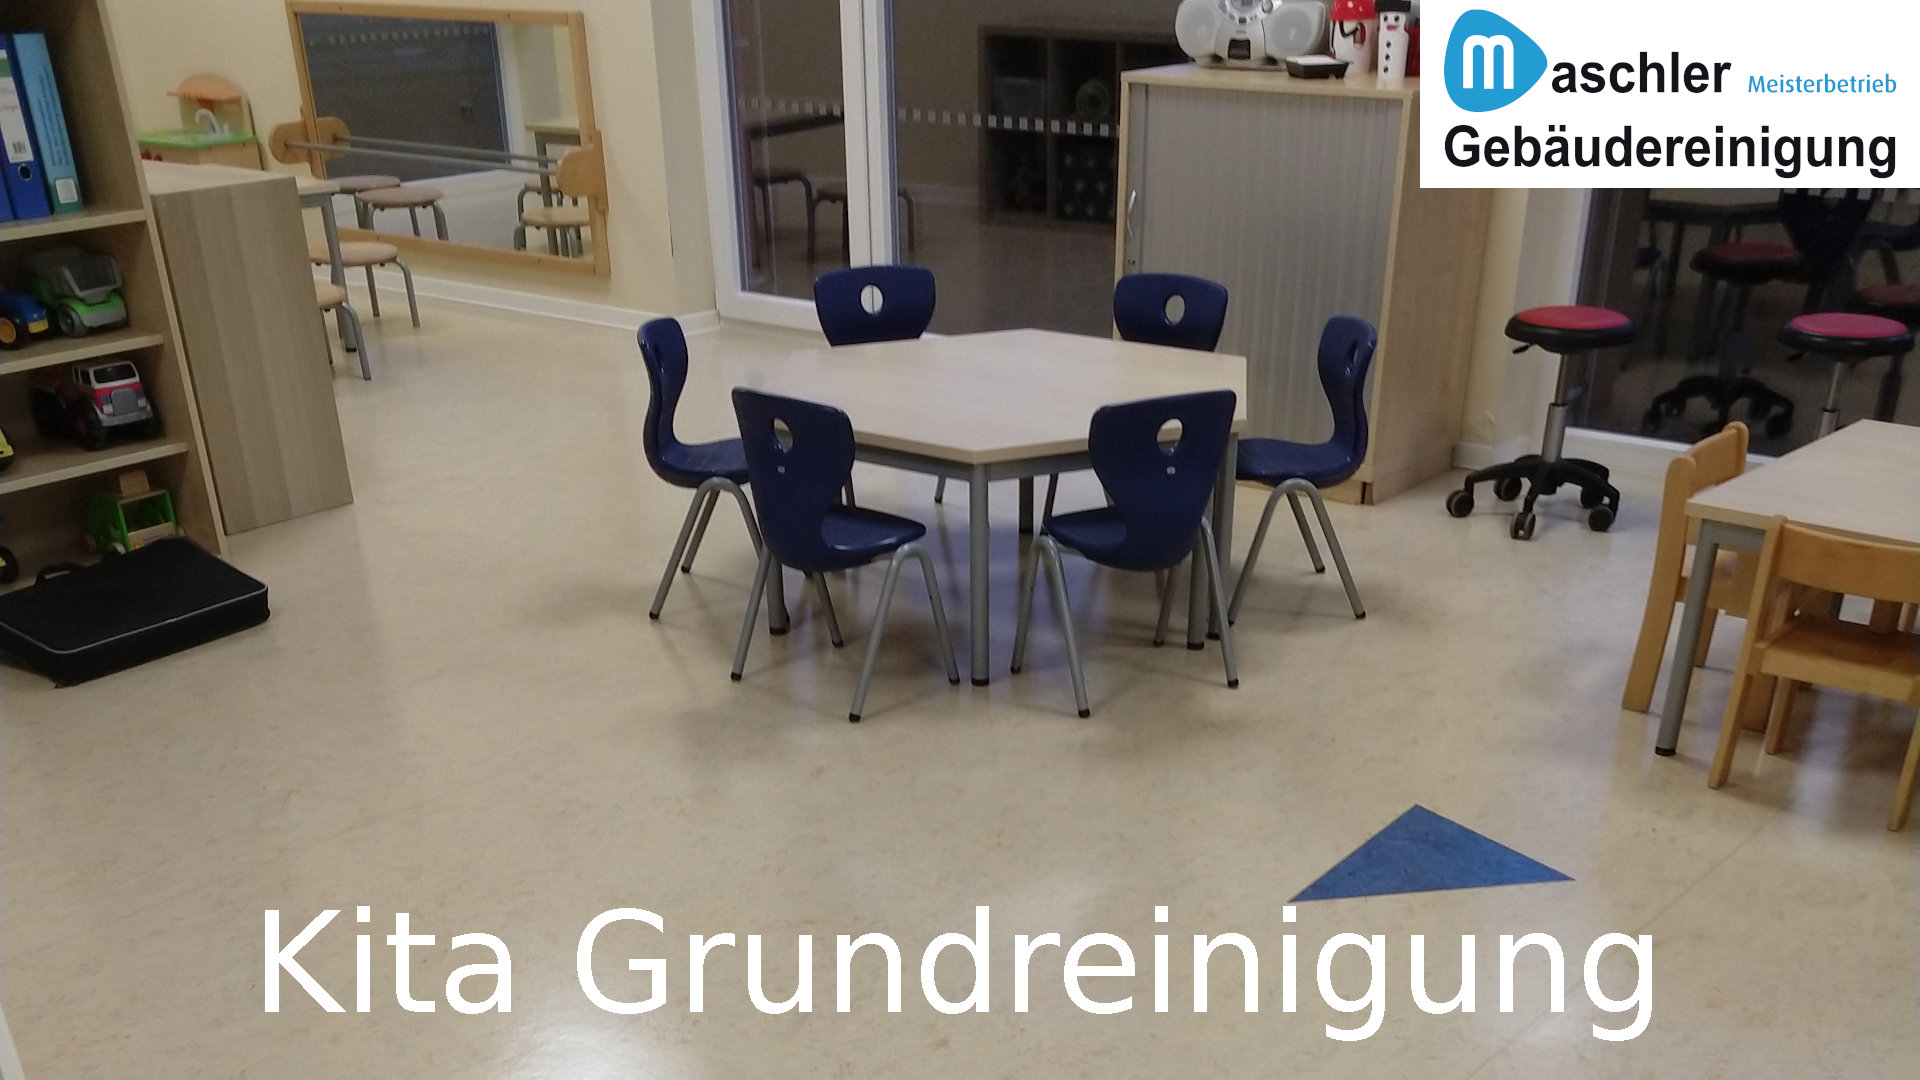 Grundreinigung im Kindergarten - Gebäudereinigung Maschler Rostock